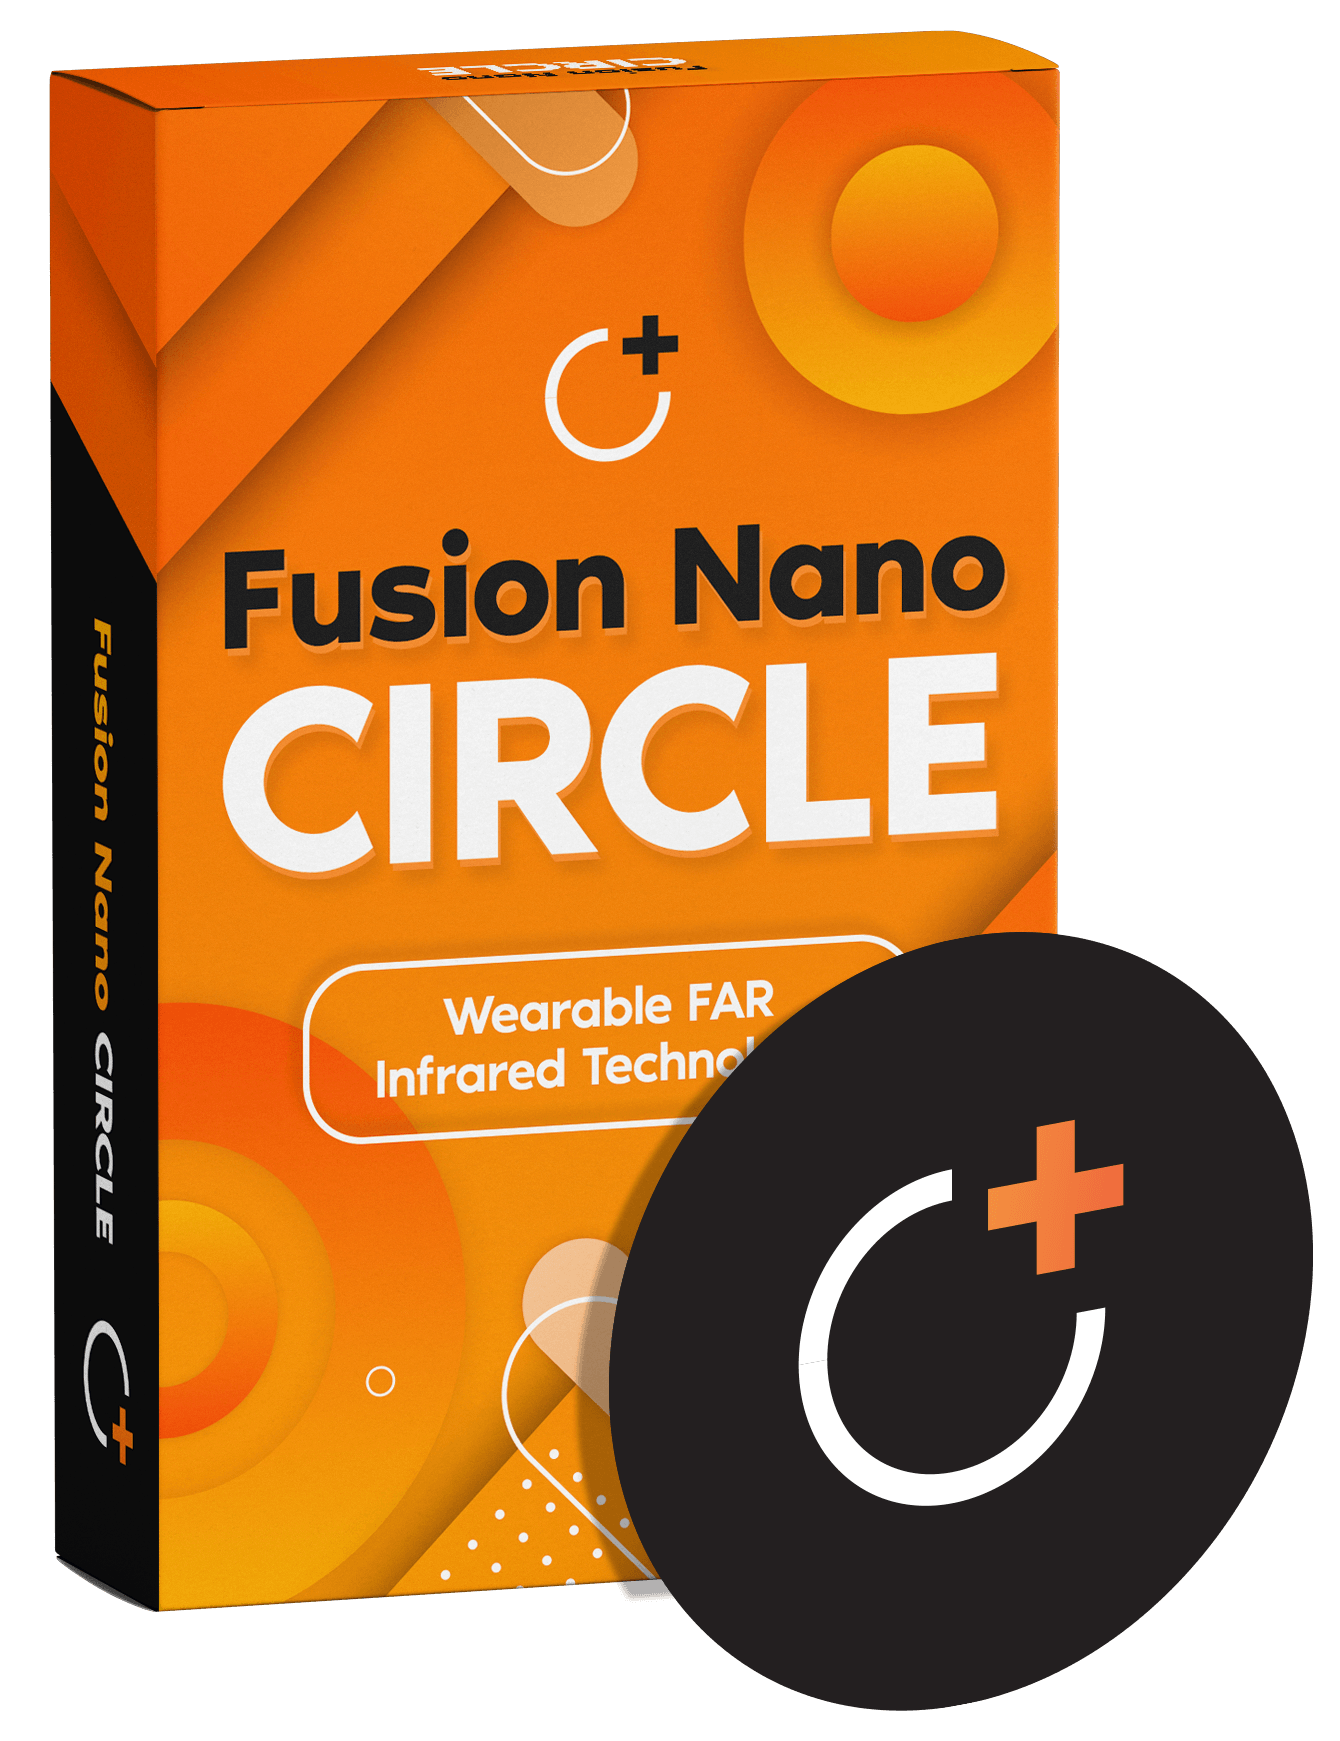 Fusion Nano Circle Reviews